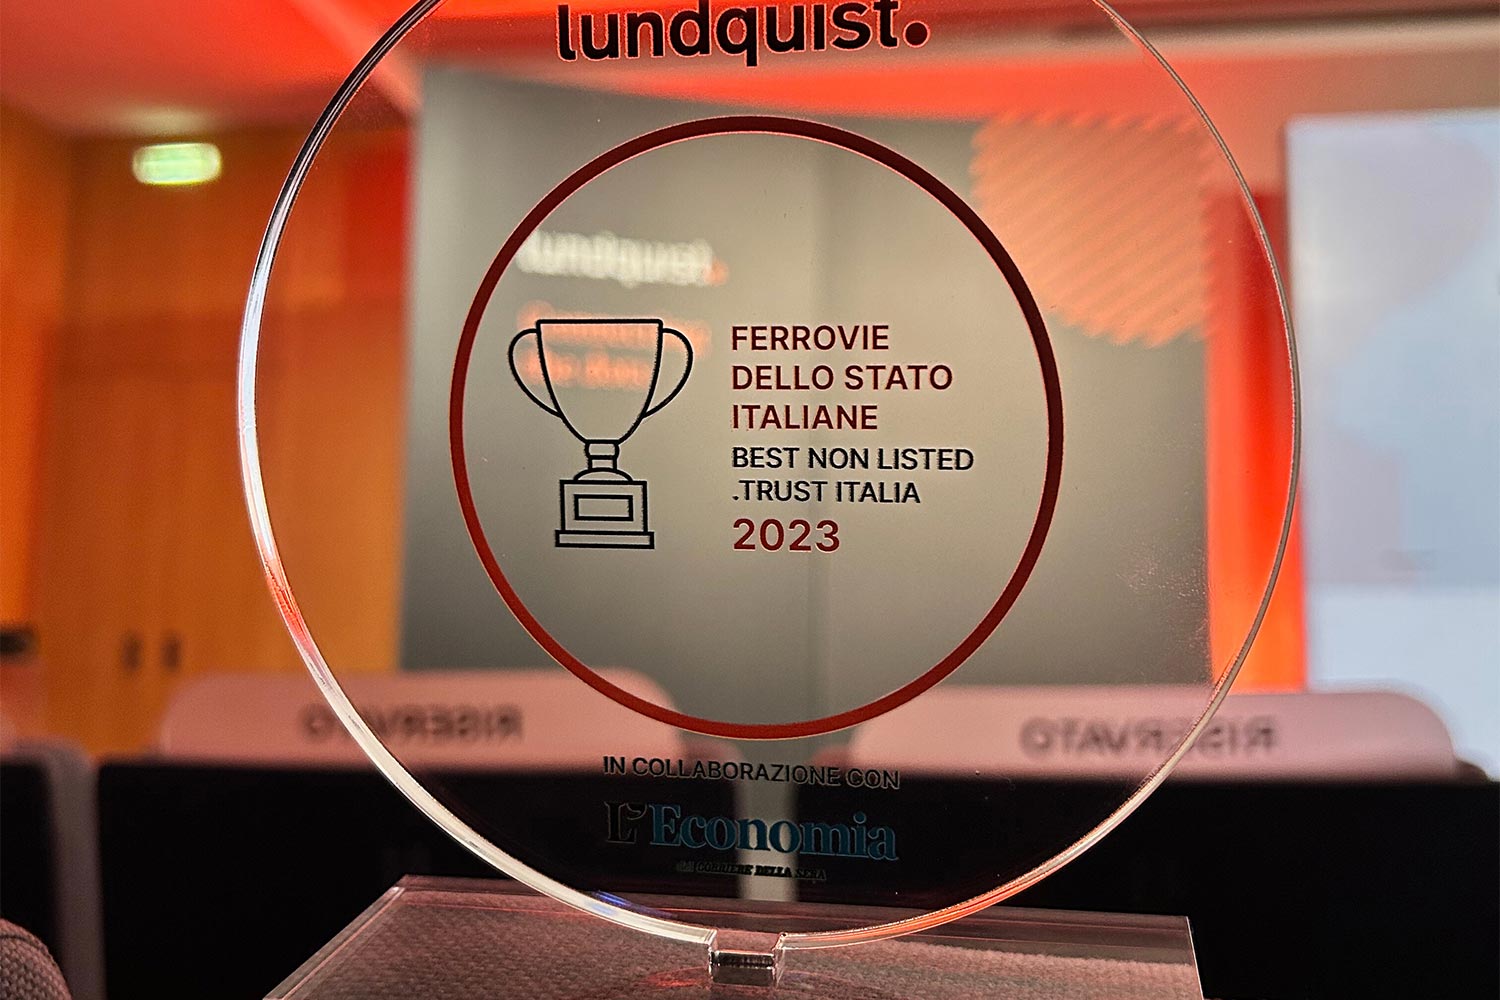 Premio Lundquist 2023